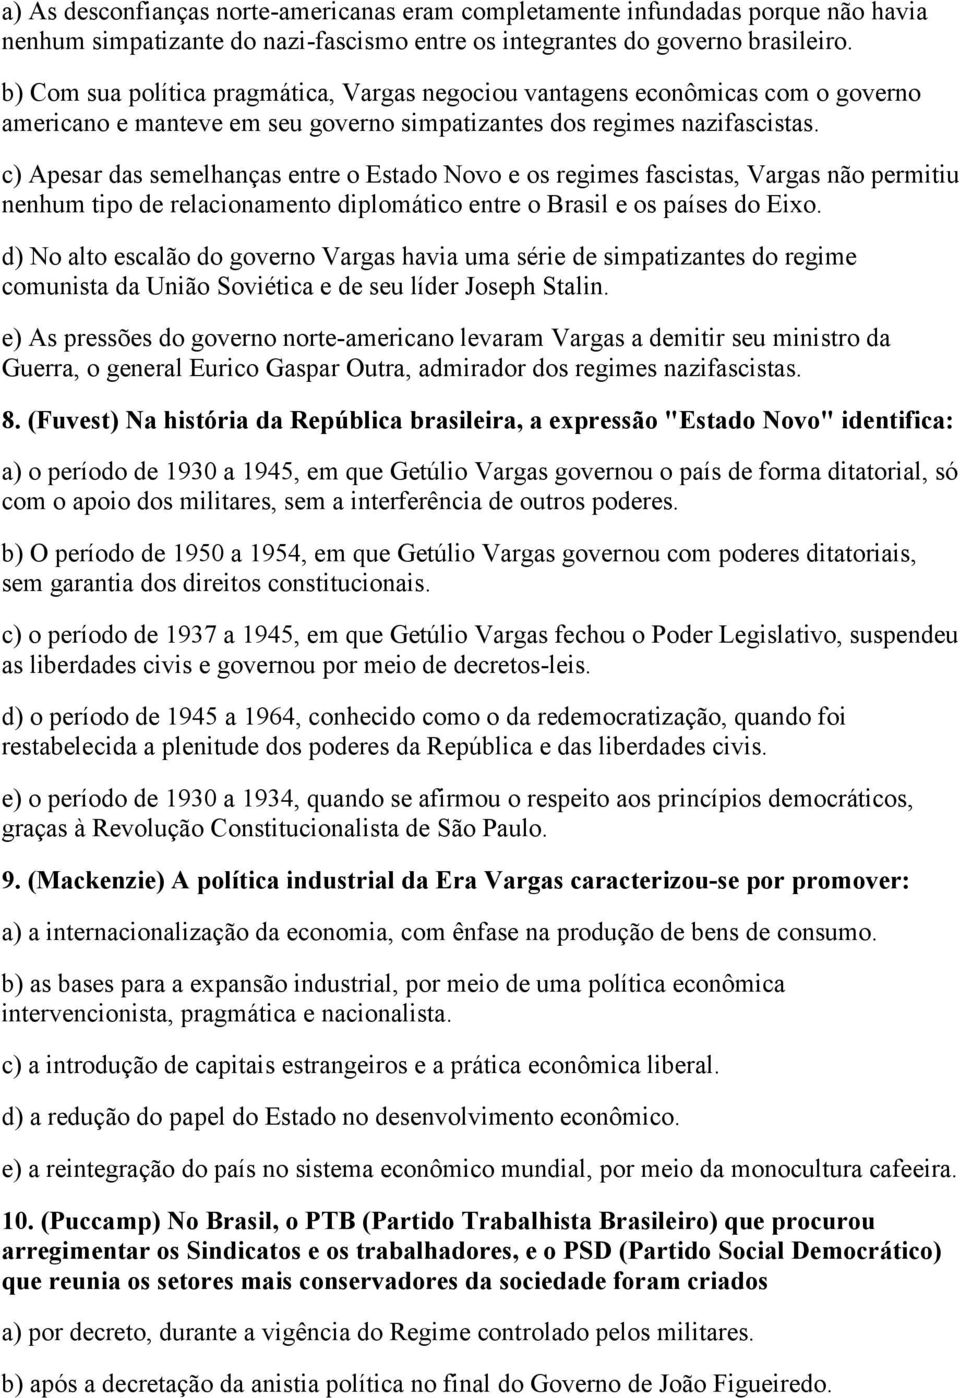 c) Apesar das semelhanças entre o Estado Novo e os regimes fascistas, Vargas não permitiu nenhum tipo de relacionamento diplomático entre o Brasil e os países do Eixo.